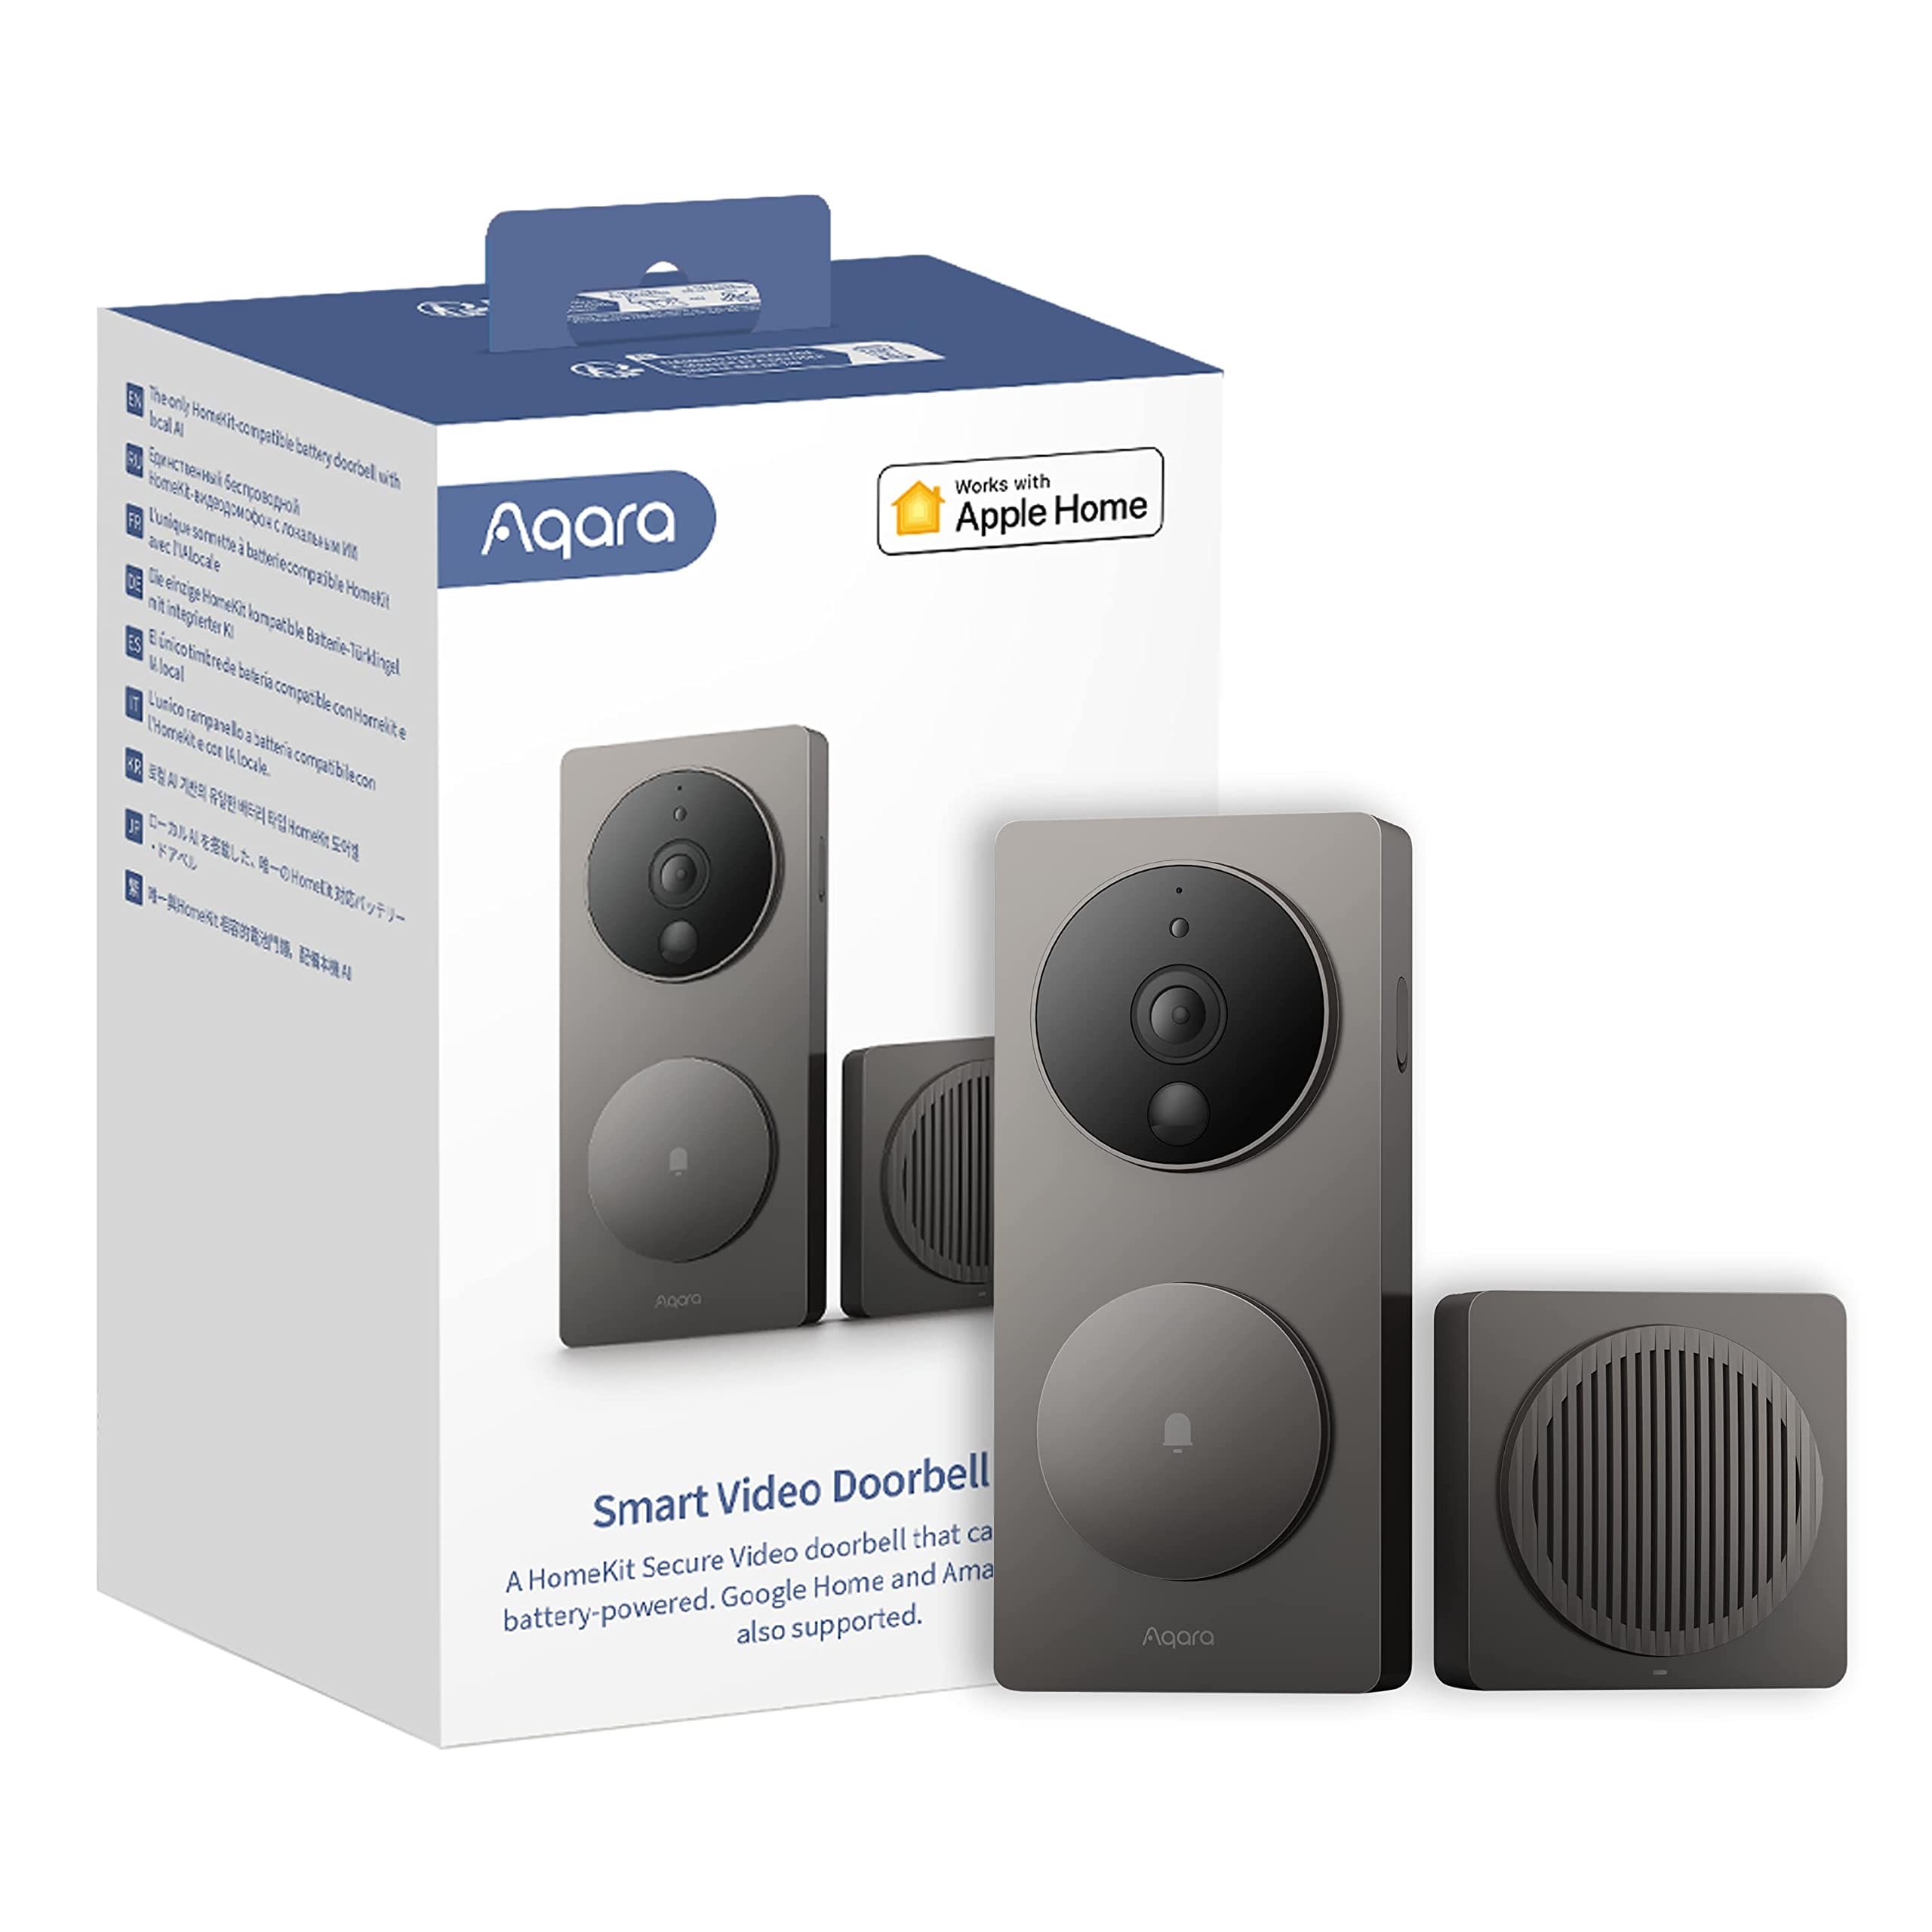 Aqara Smarte Video-Türklingel G4 (inkl. Klingel), 1080p FHD HomeKit Secure -Kamera, Lokale Gesichtserkennung und Automatisierungen, Unterstützt Alexa, Apple Home, Google, Grau